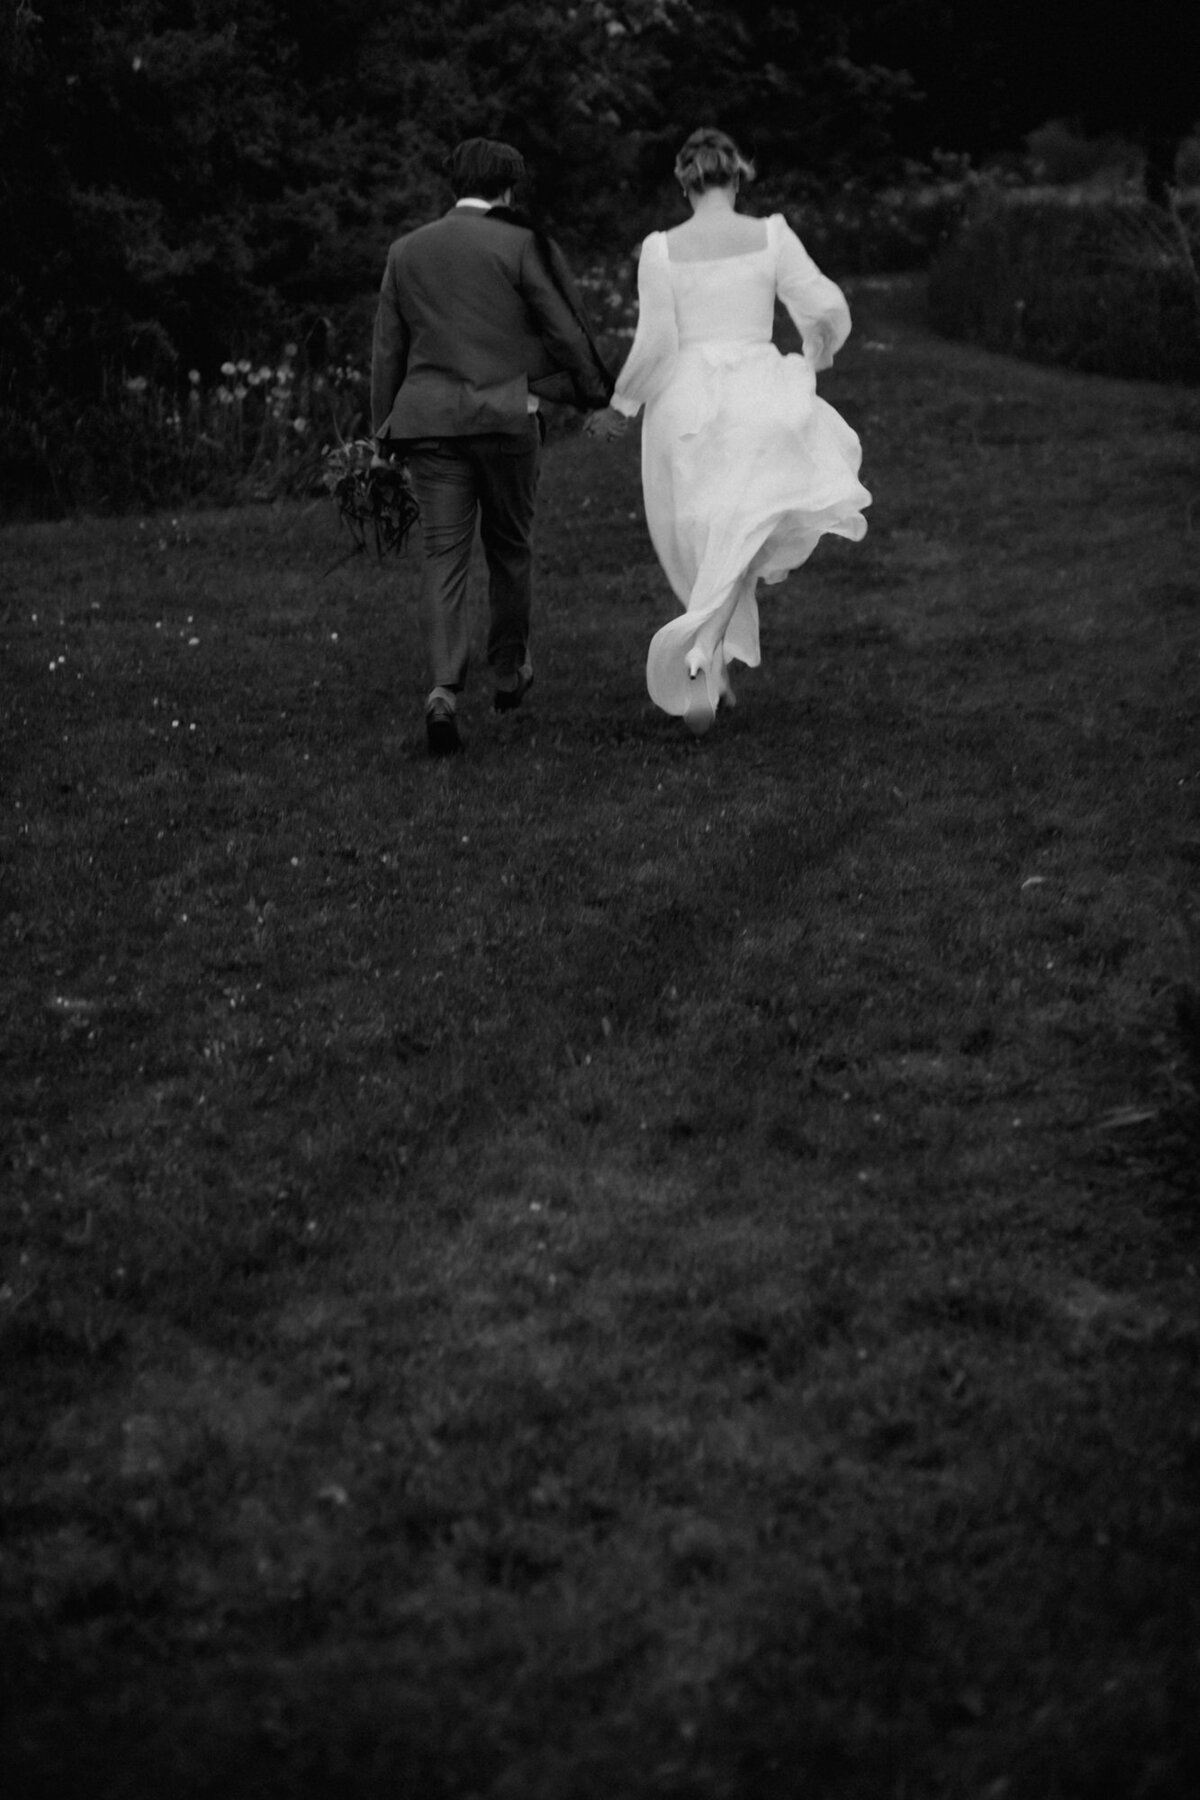 Das Hochzeitspaar rennt schwungvoll über eine Wiese. Die Kamera ist von hinten auf sie gerichtet.